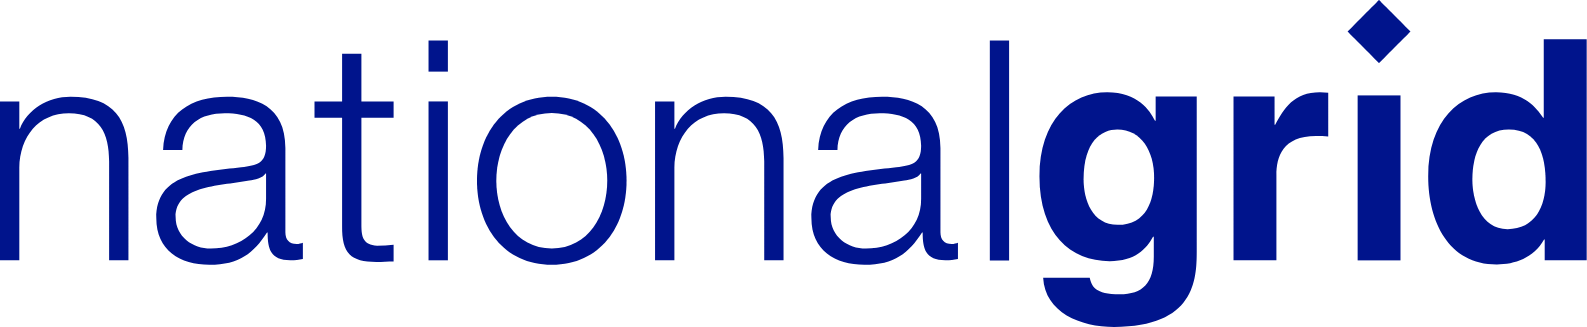 National Grid logo large (transparent PNG)